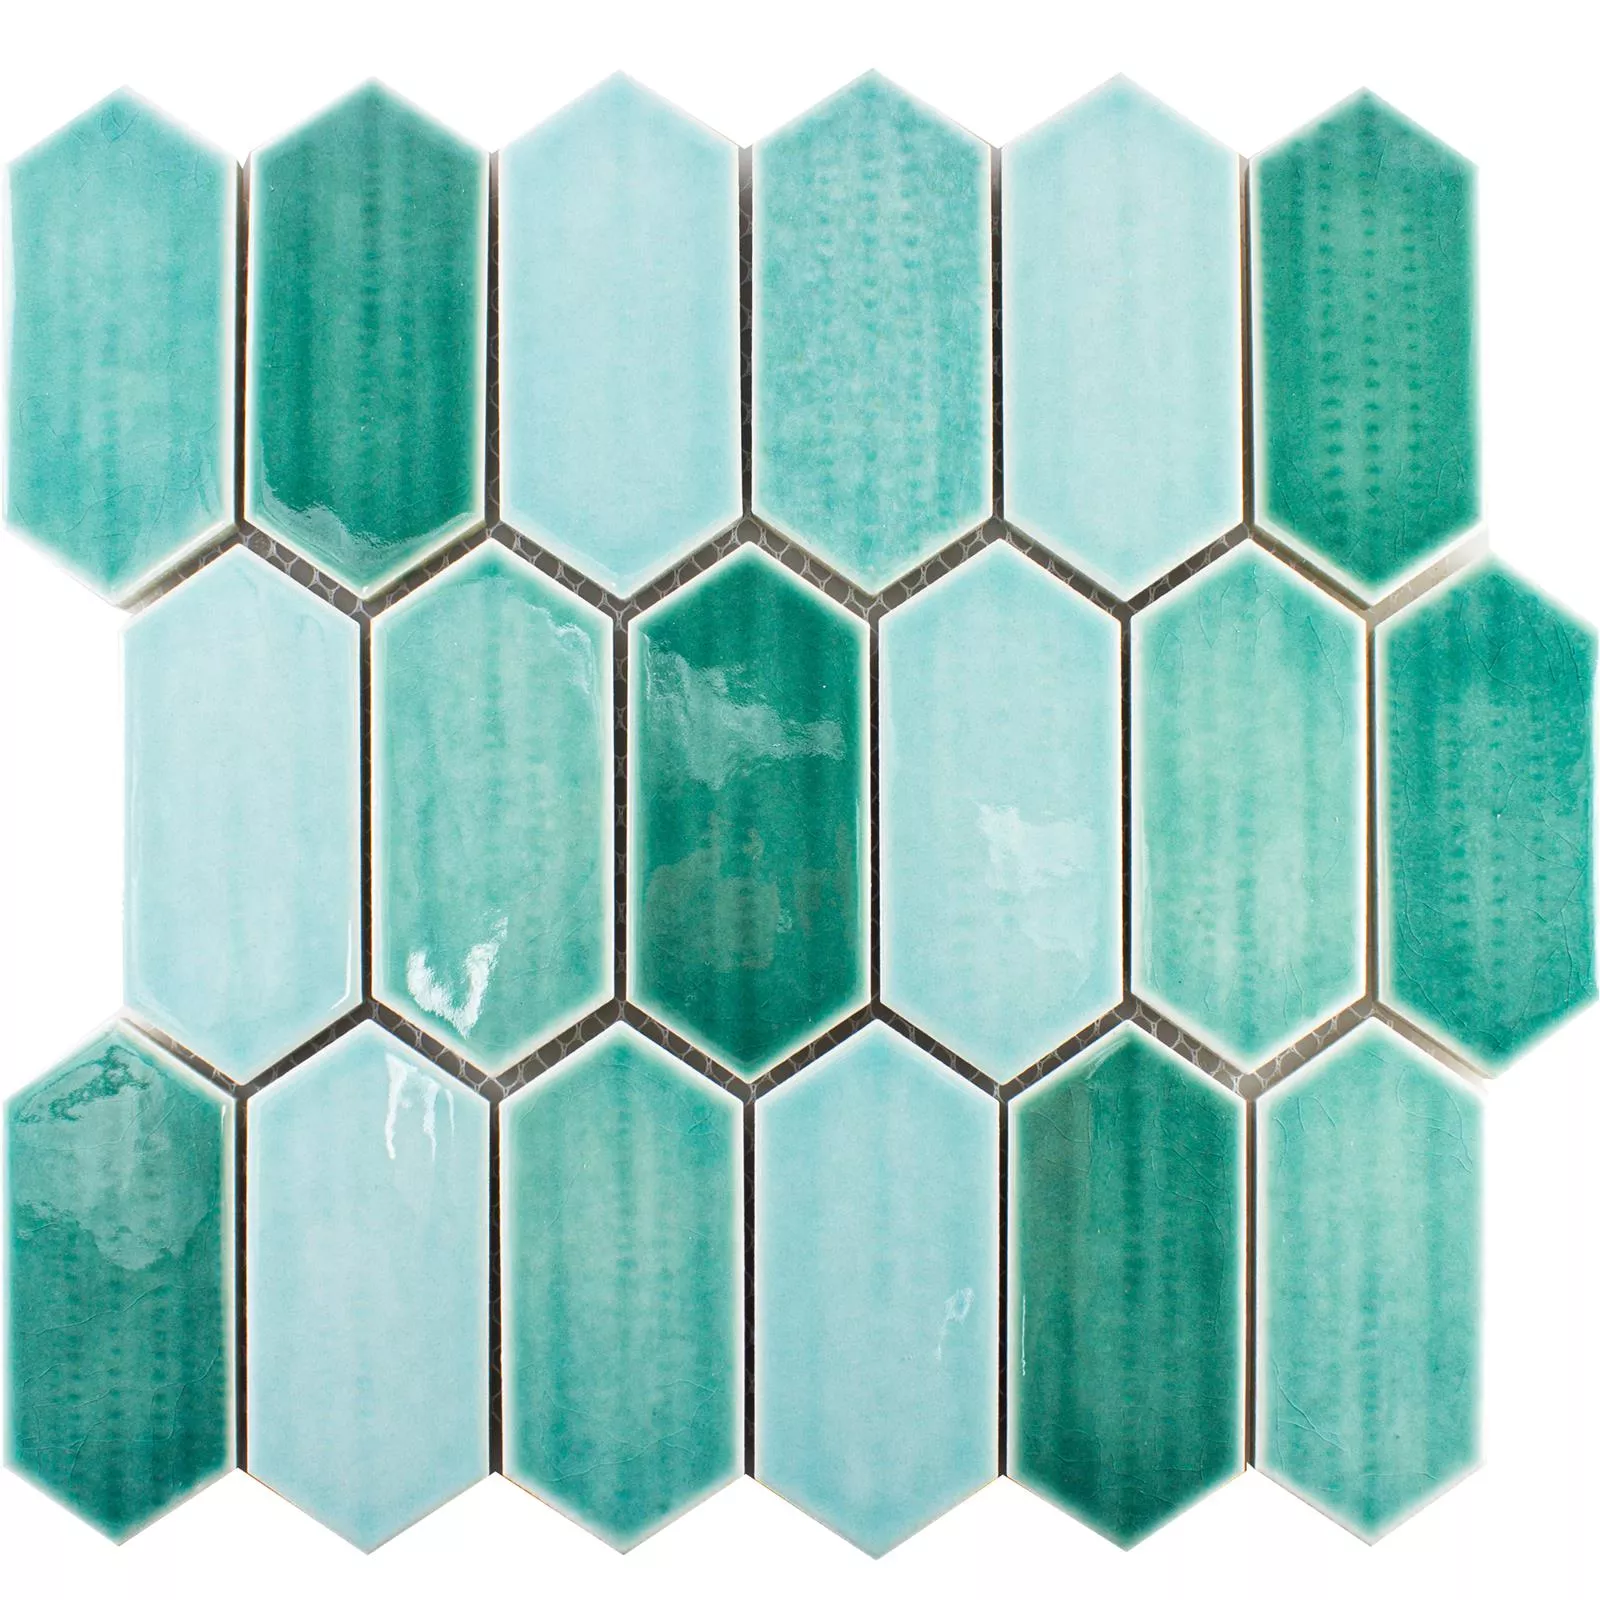 Sample Keramiek Mozaïektegel McCook Hexagon Lang Turquoise Groen